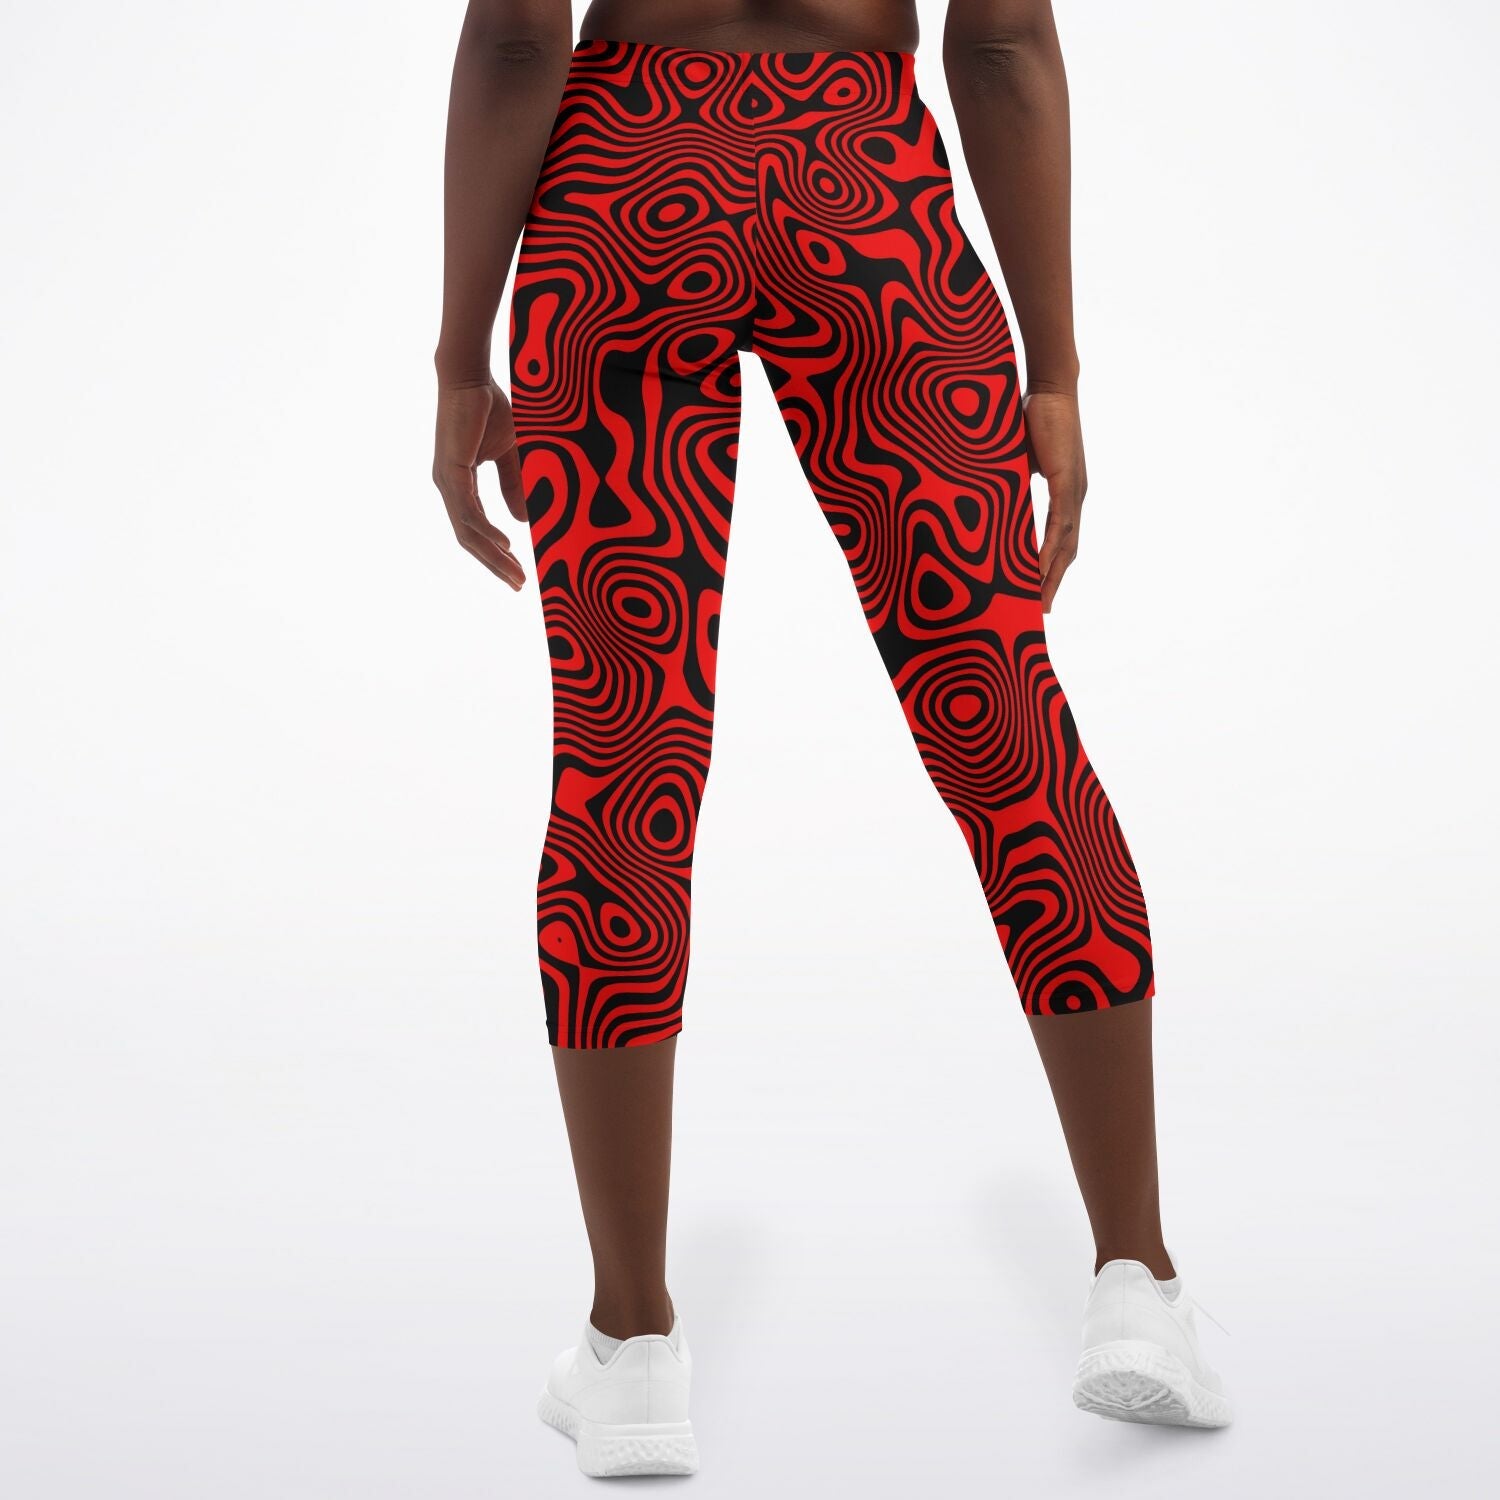 Pockets Tights & Leggings. Nike.com